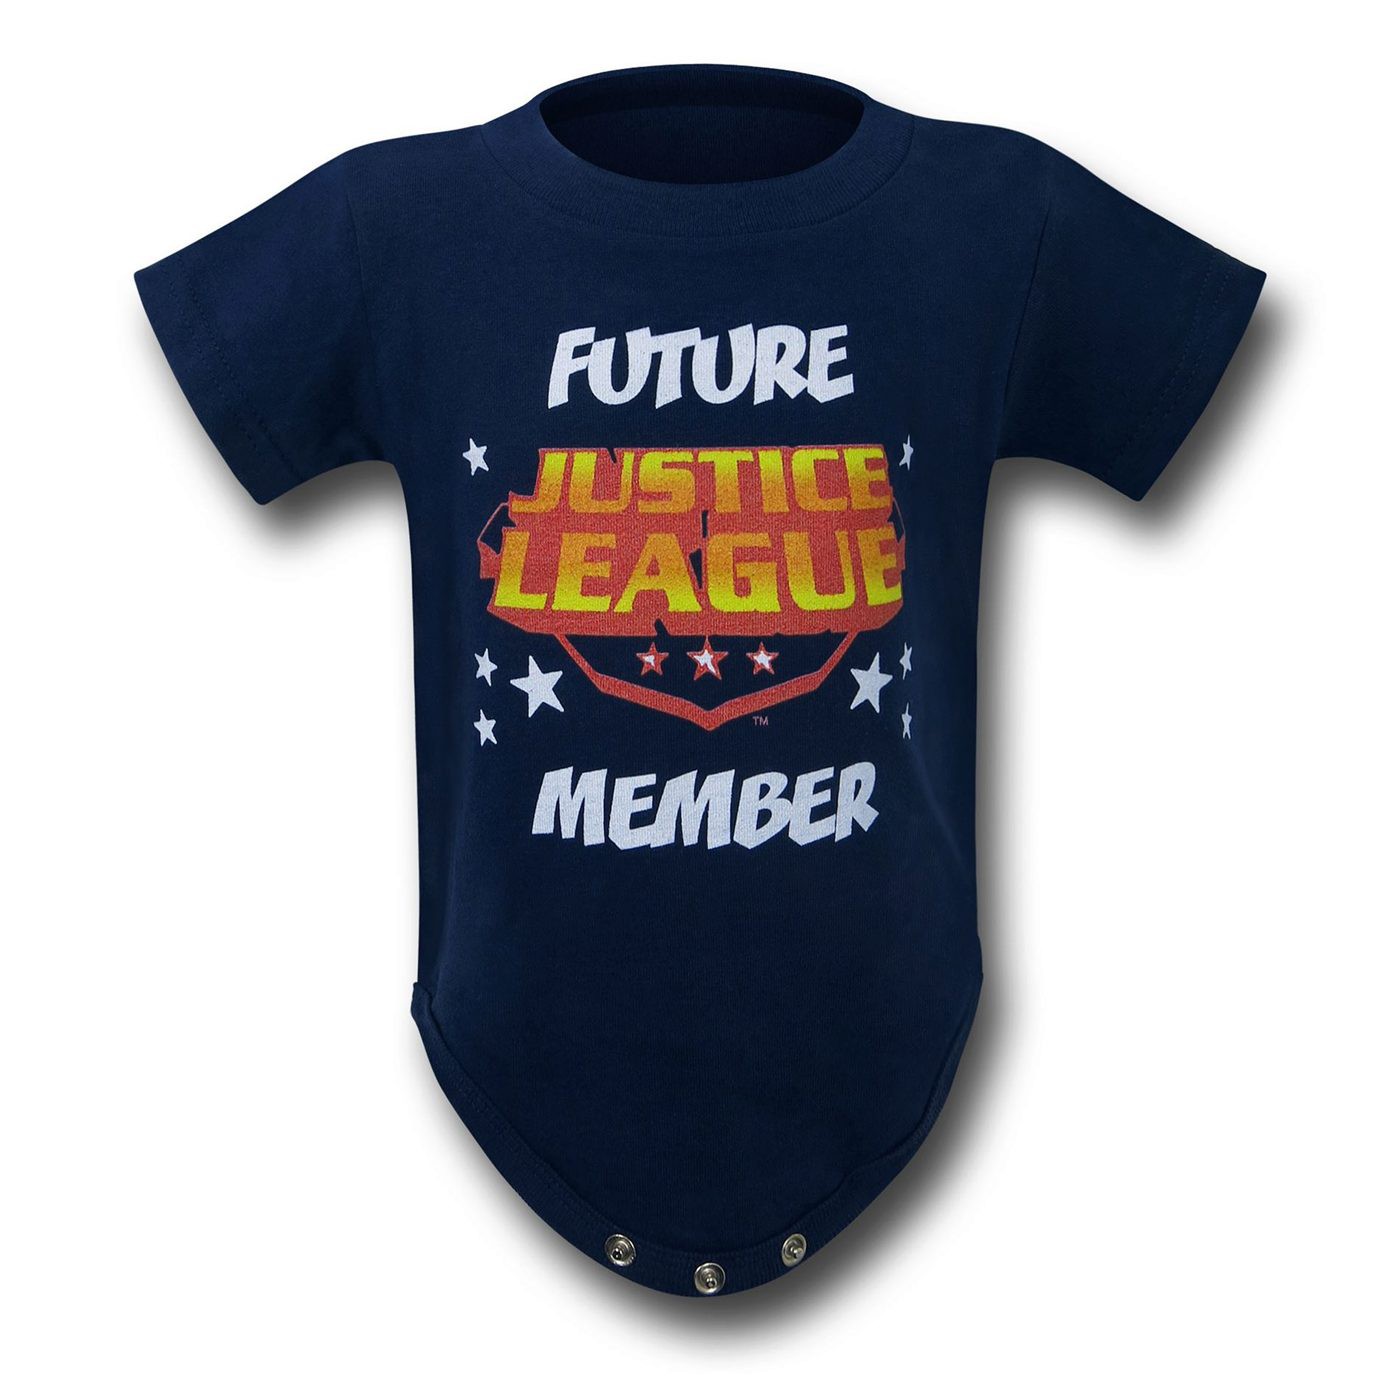 JLA Future Member Infant Snapsuit